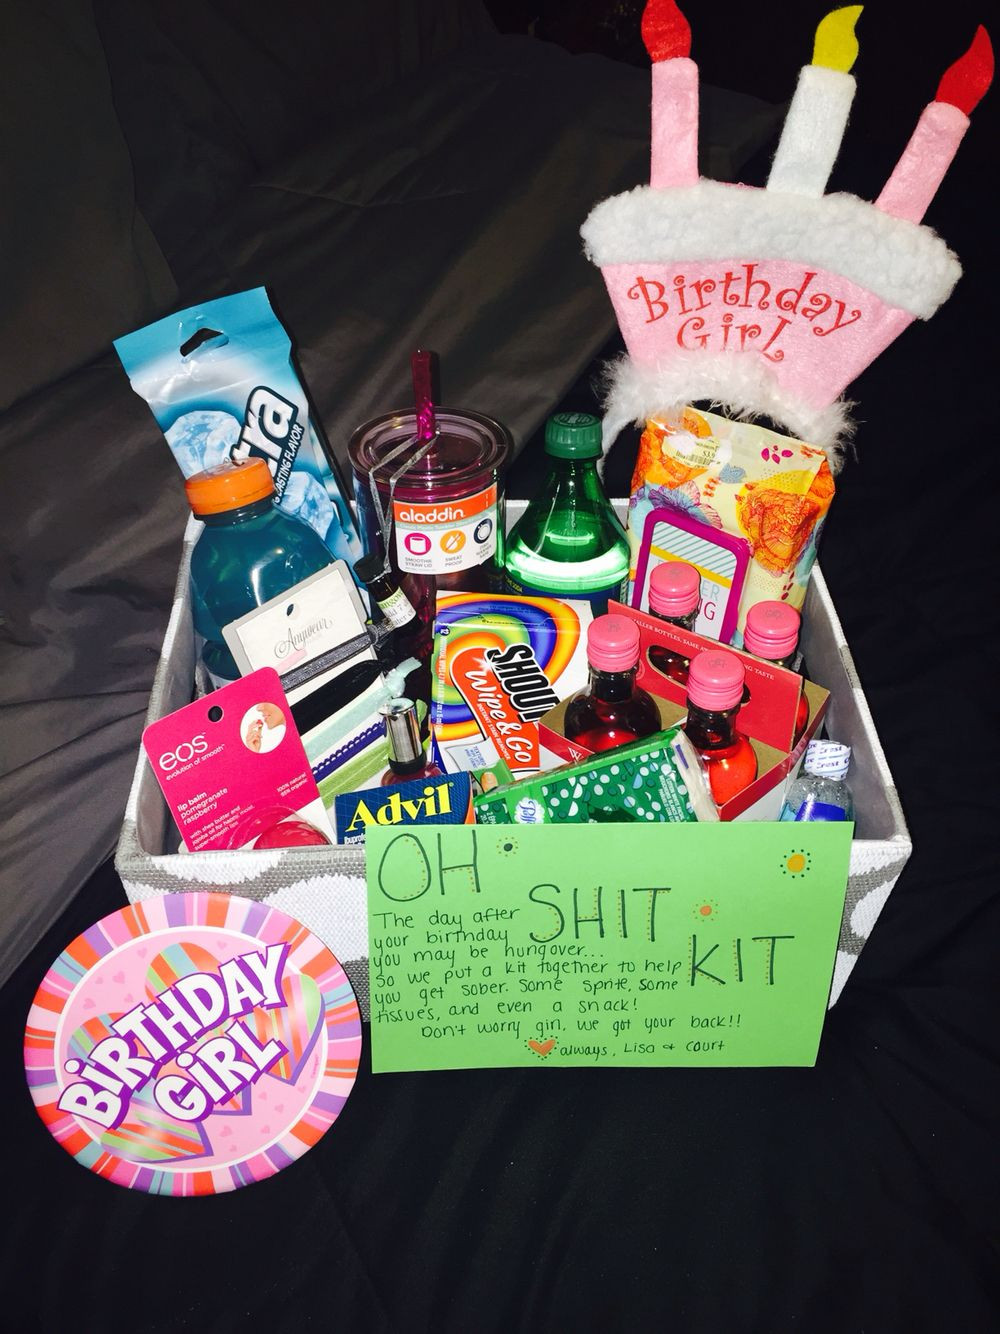 Birthday Gift Ideas For Best Friend Girl
 Bestfriend s 21st birthday "Oh Shit Kit"